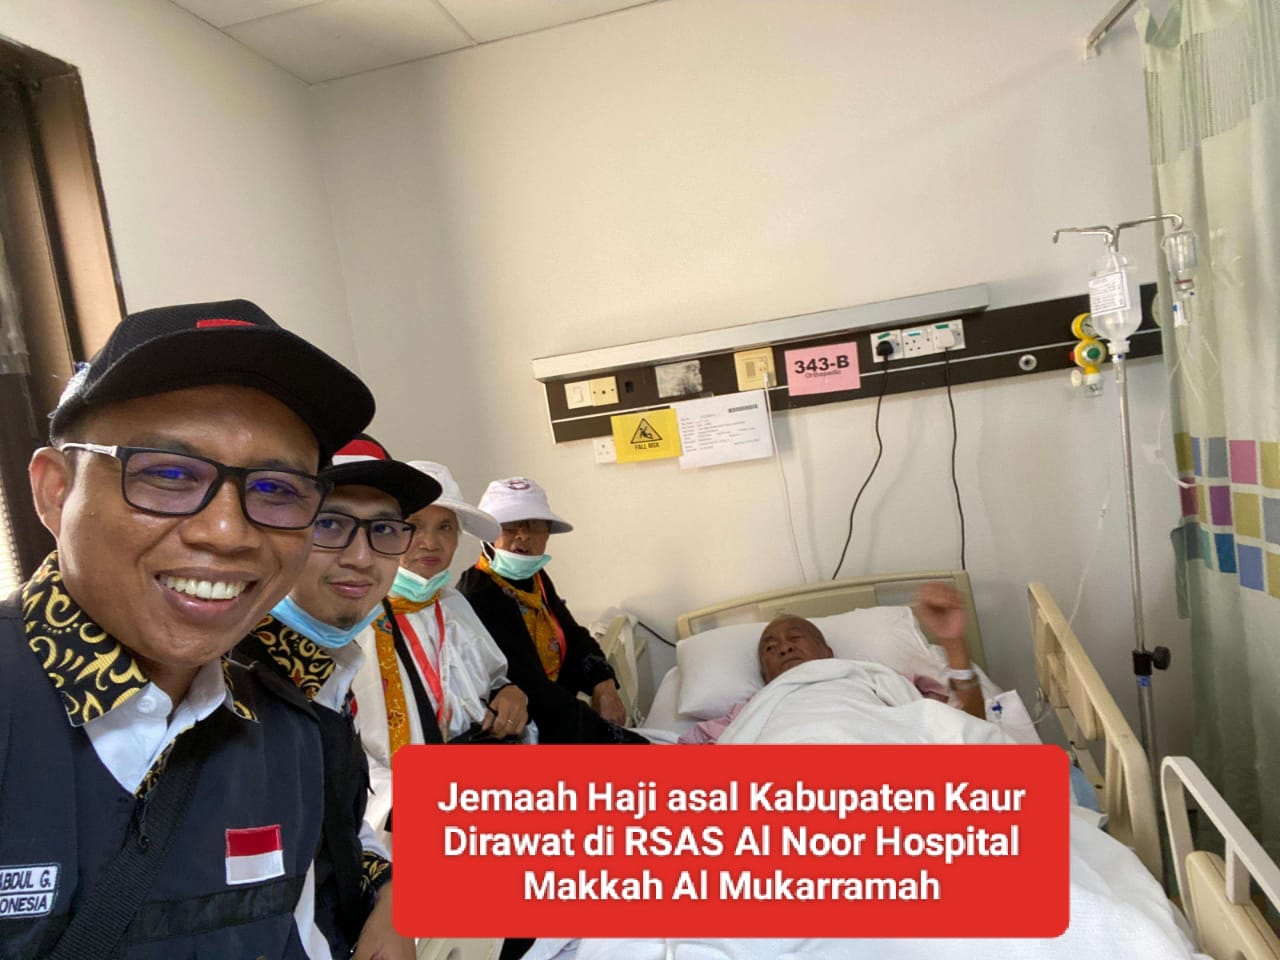 2 Jemaah Haji Asal Kabupaten Kaur Dibawa ke Rumah Sakit, Kloter 4 Padang Menginap di Hotel Luluat Al Mashaer